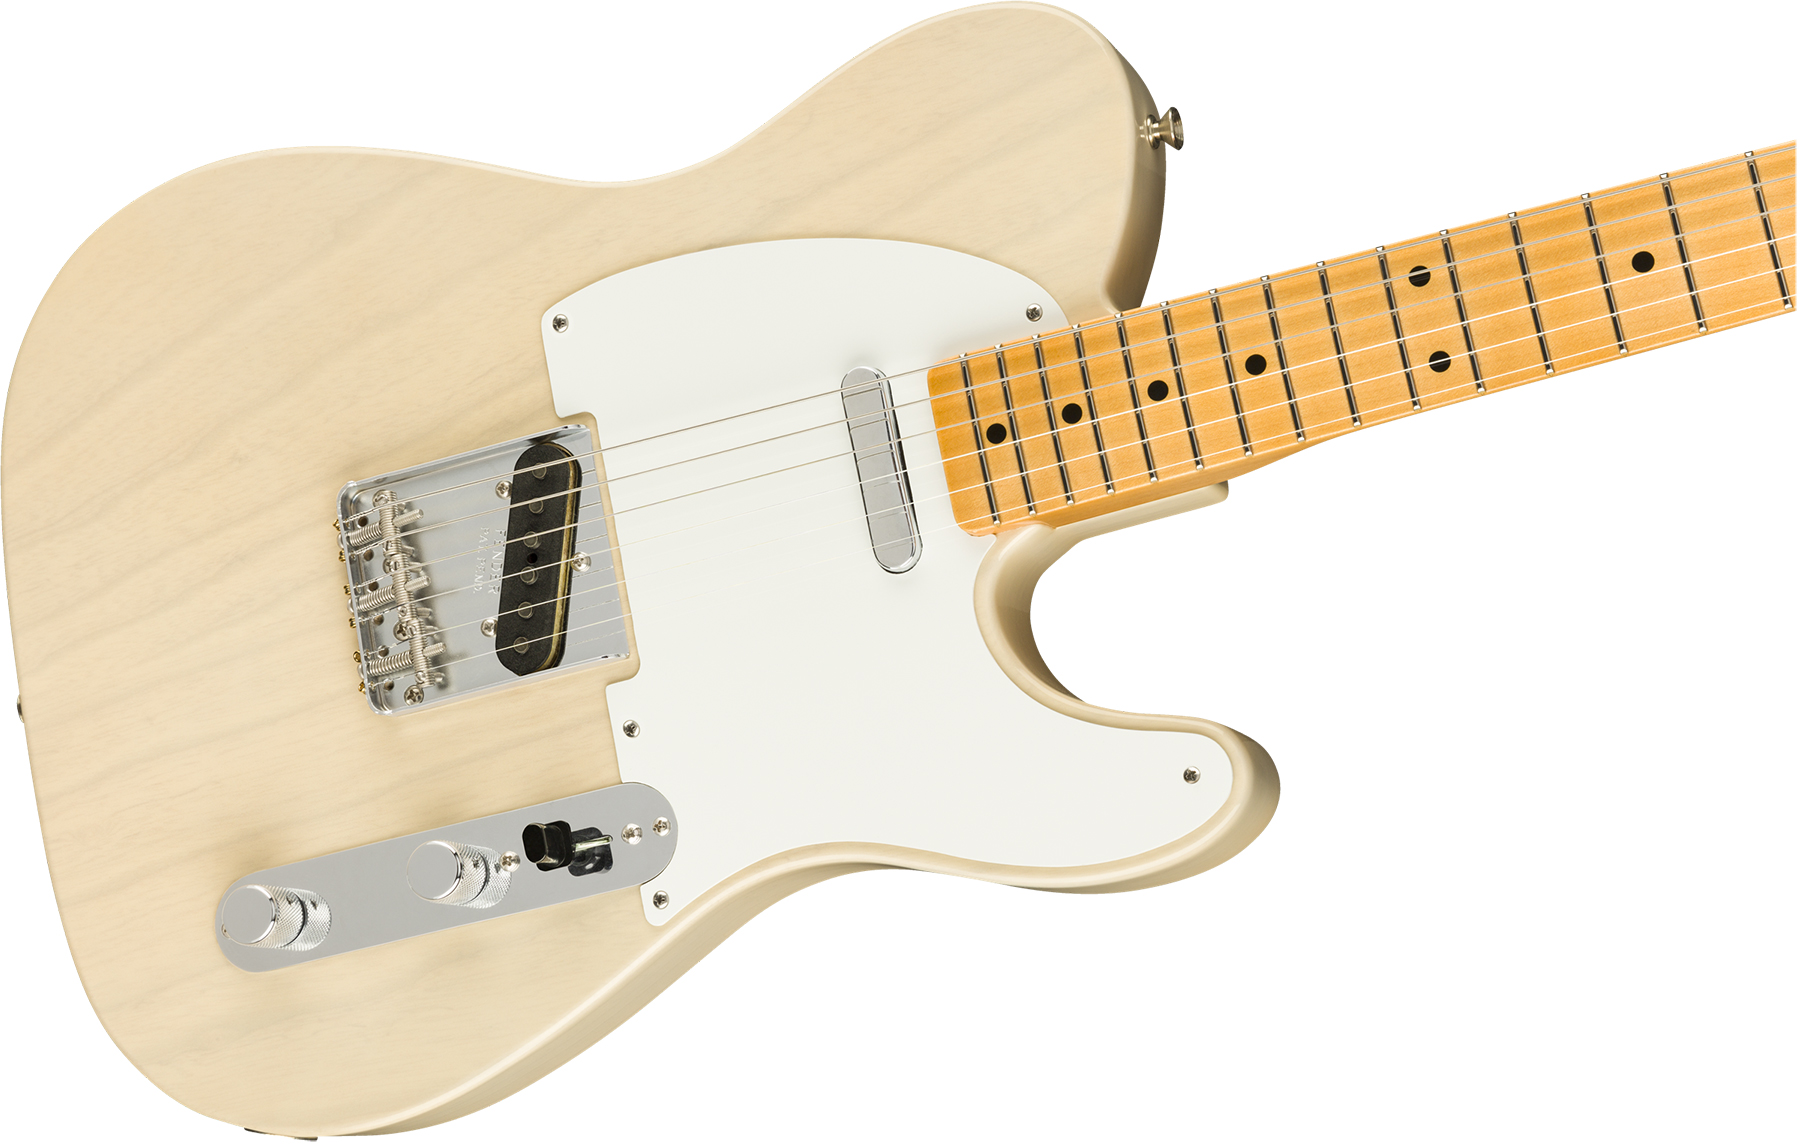 Fender Custom Shop Tele Vintage Custom 1958 Top Load Ltd Mn - Nos Aged White Blonde - E-Gitarre in Teleform - Variation 2